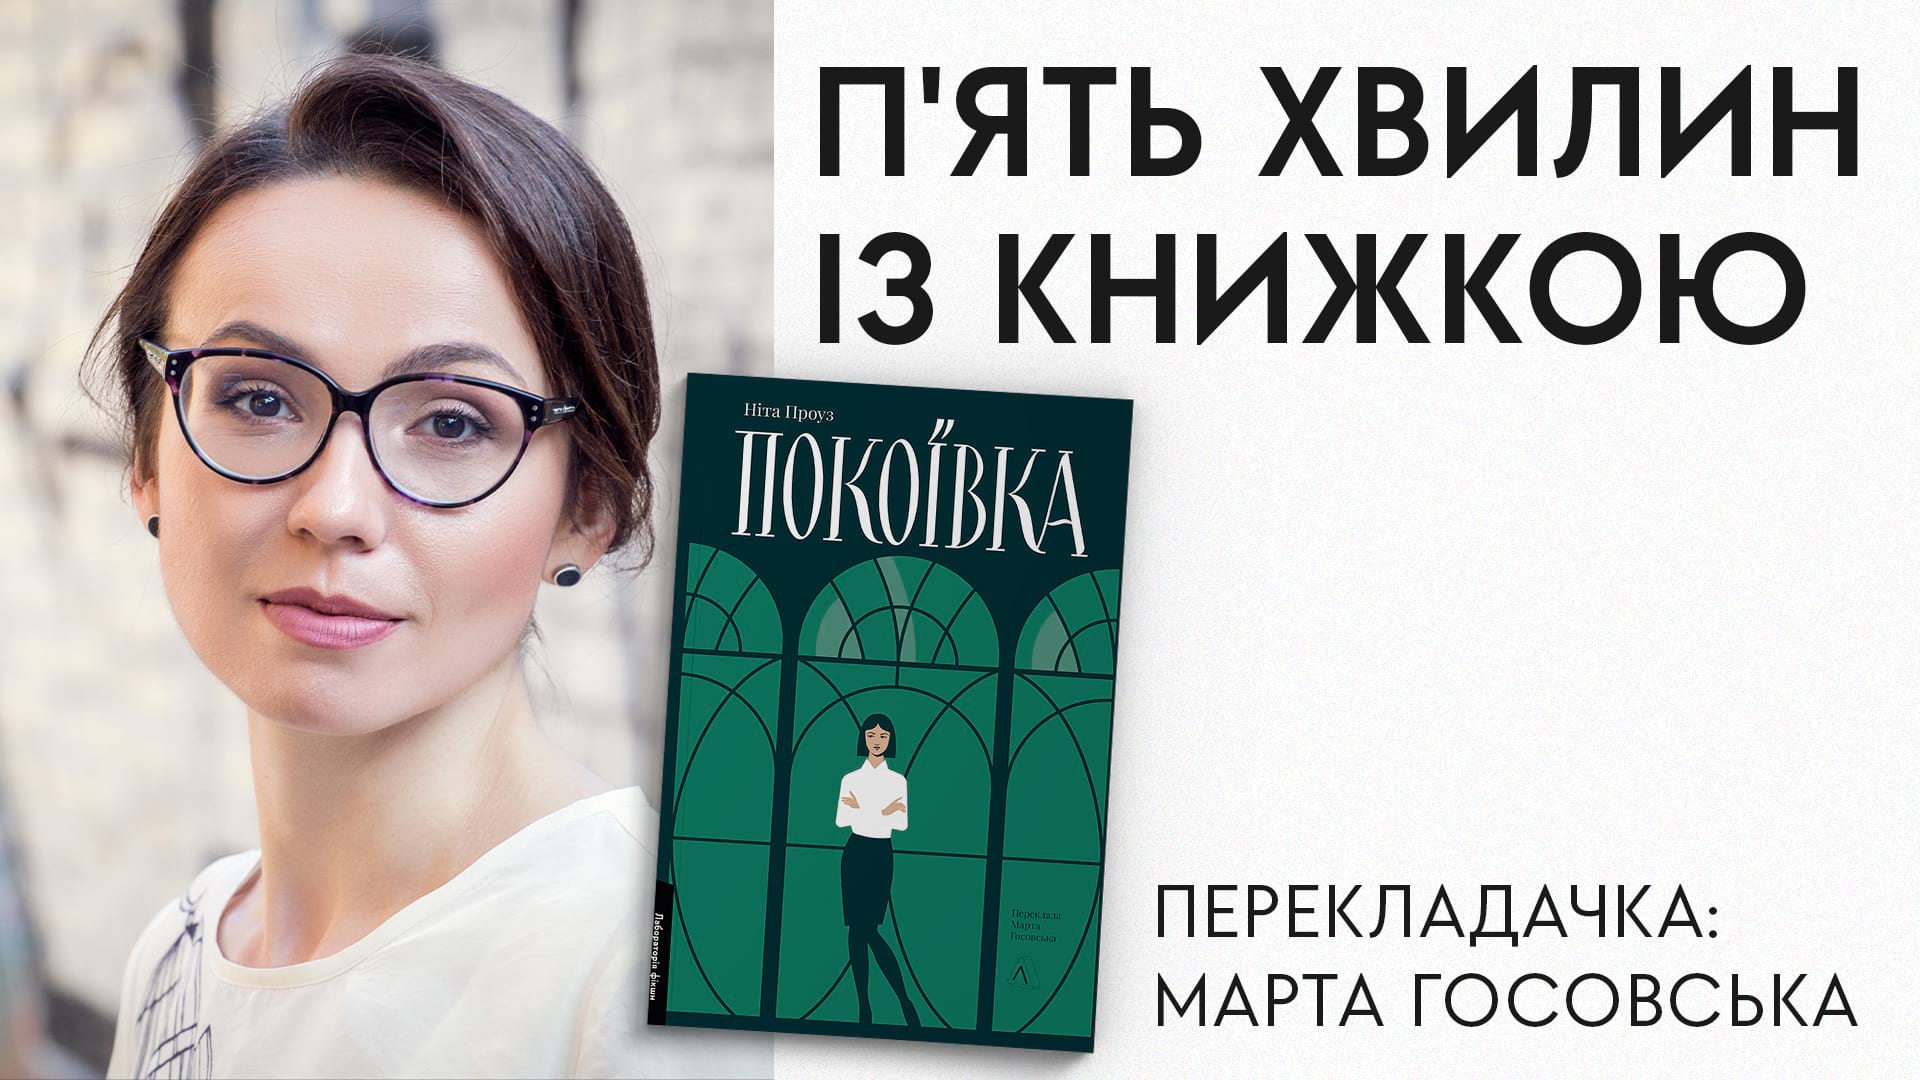 Рубрика "П'ять хвилин із книжкою" і Марта Госовська